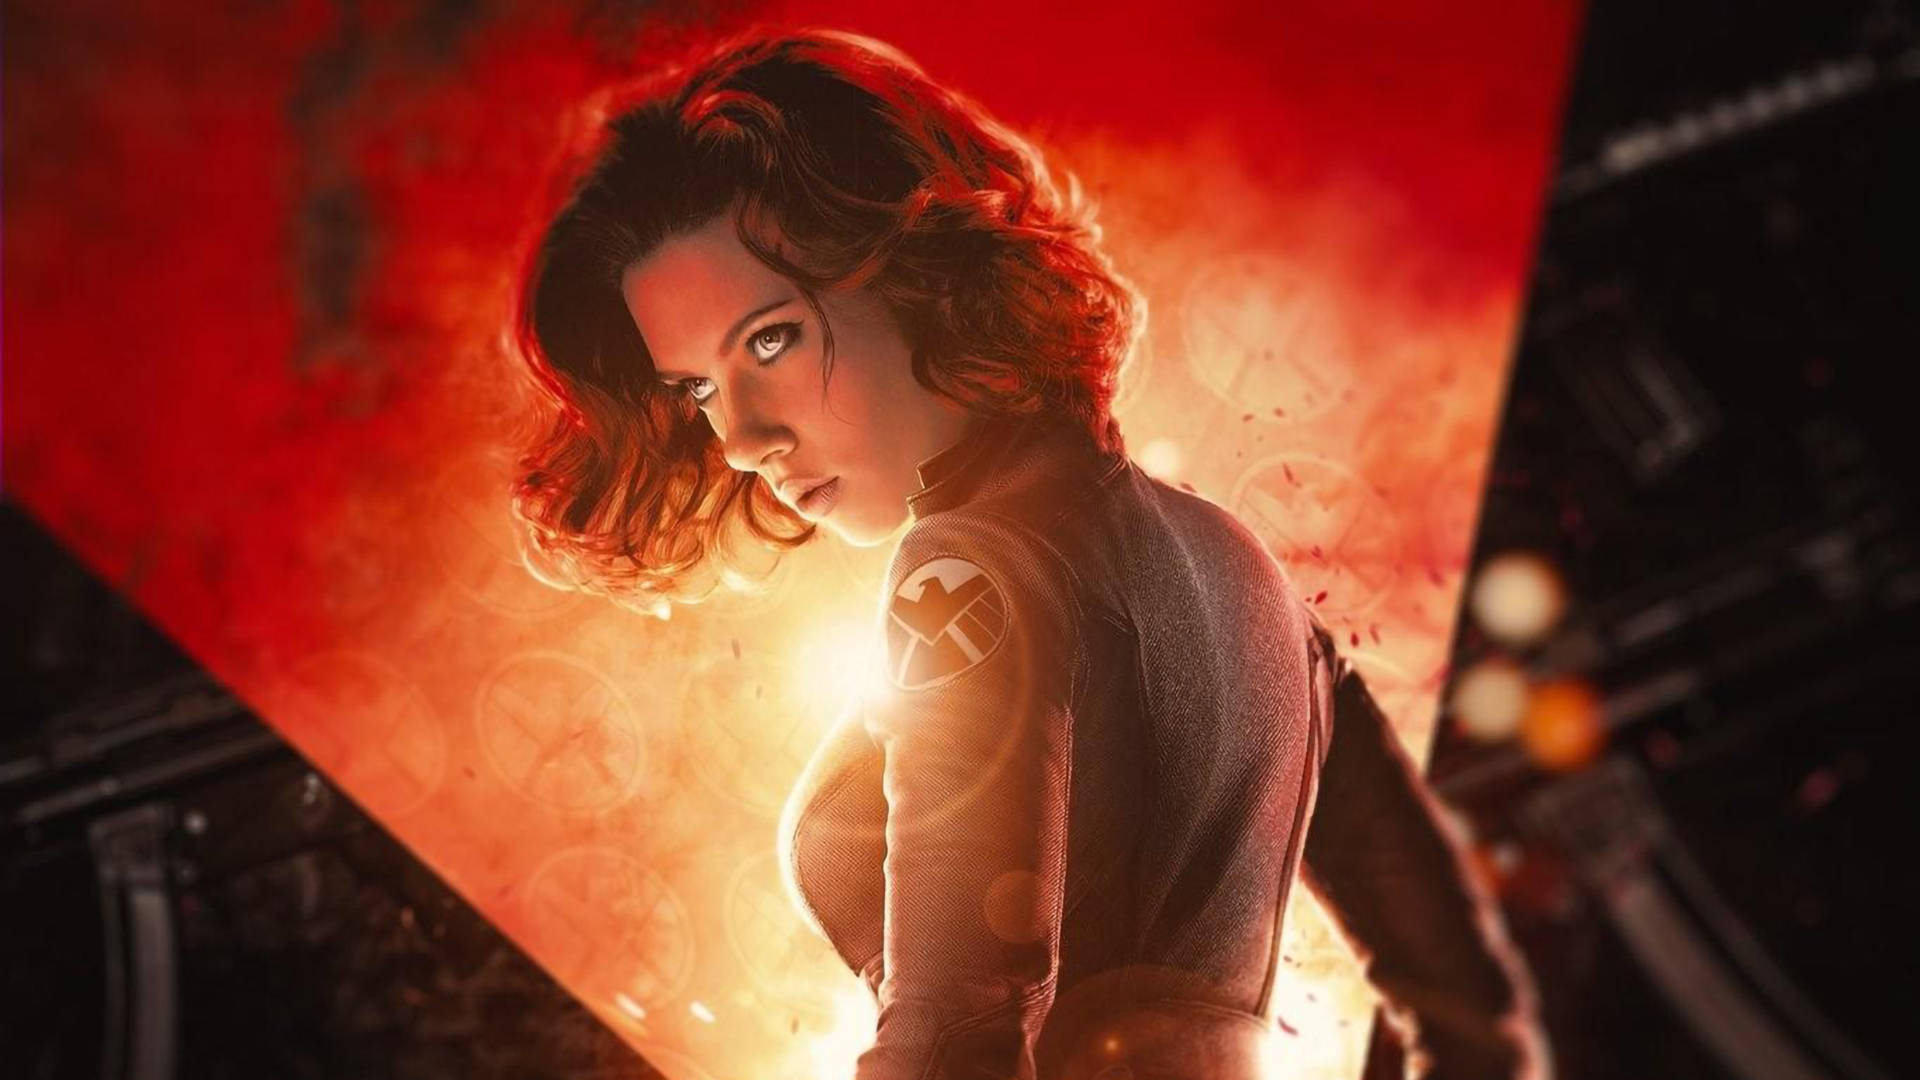 Scarlett Johansson as Black Widow in Action Wallpaper